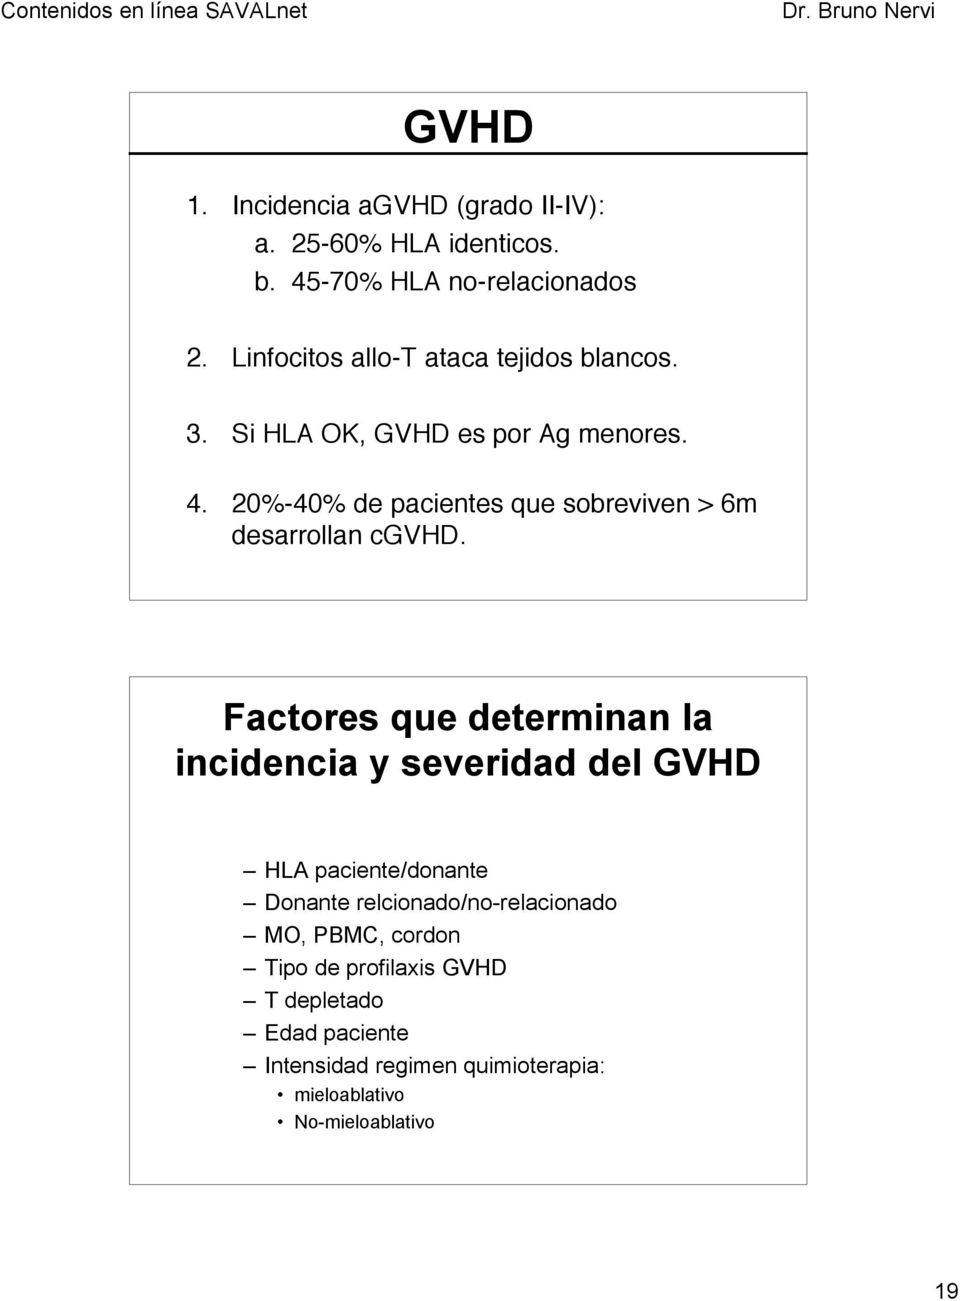 20%-40% de pacientes que sobreviven > 6m desarrollan cgvhd.